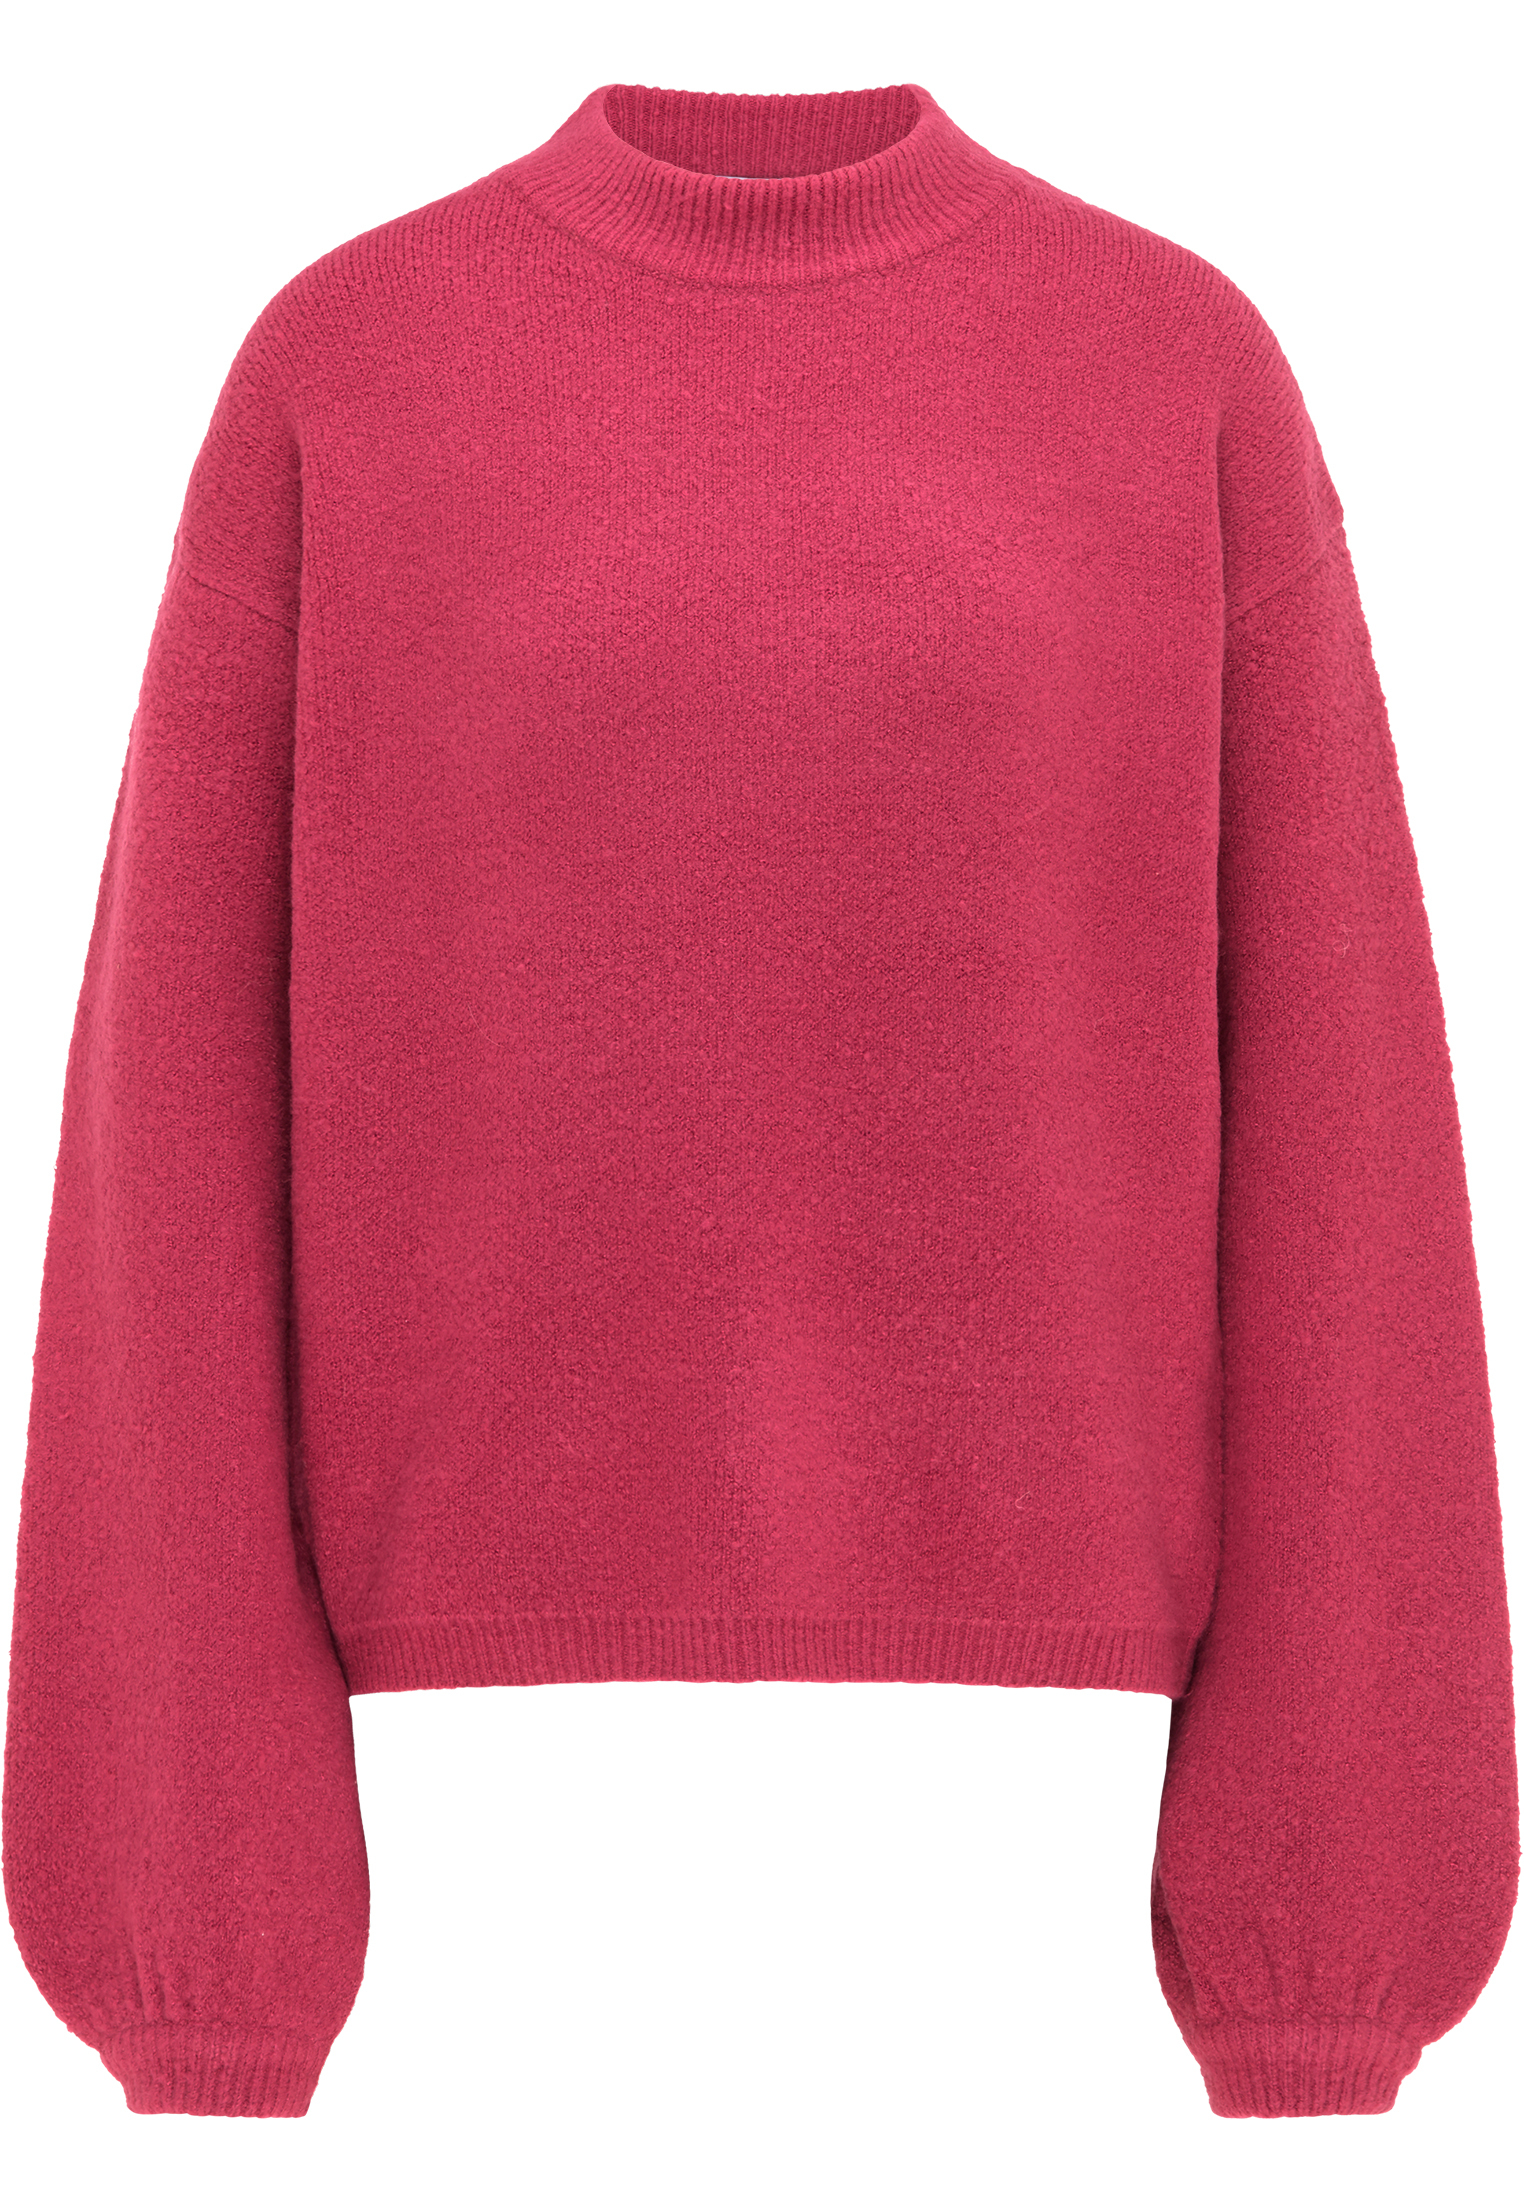 Odzież 978Pq MYMO Sweter w kolorze Ciemnoróżowym 